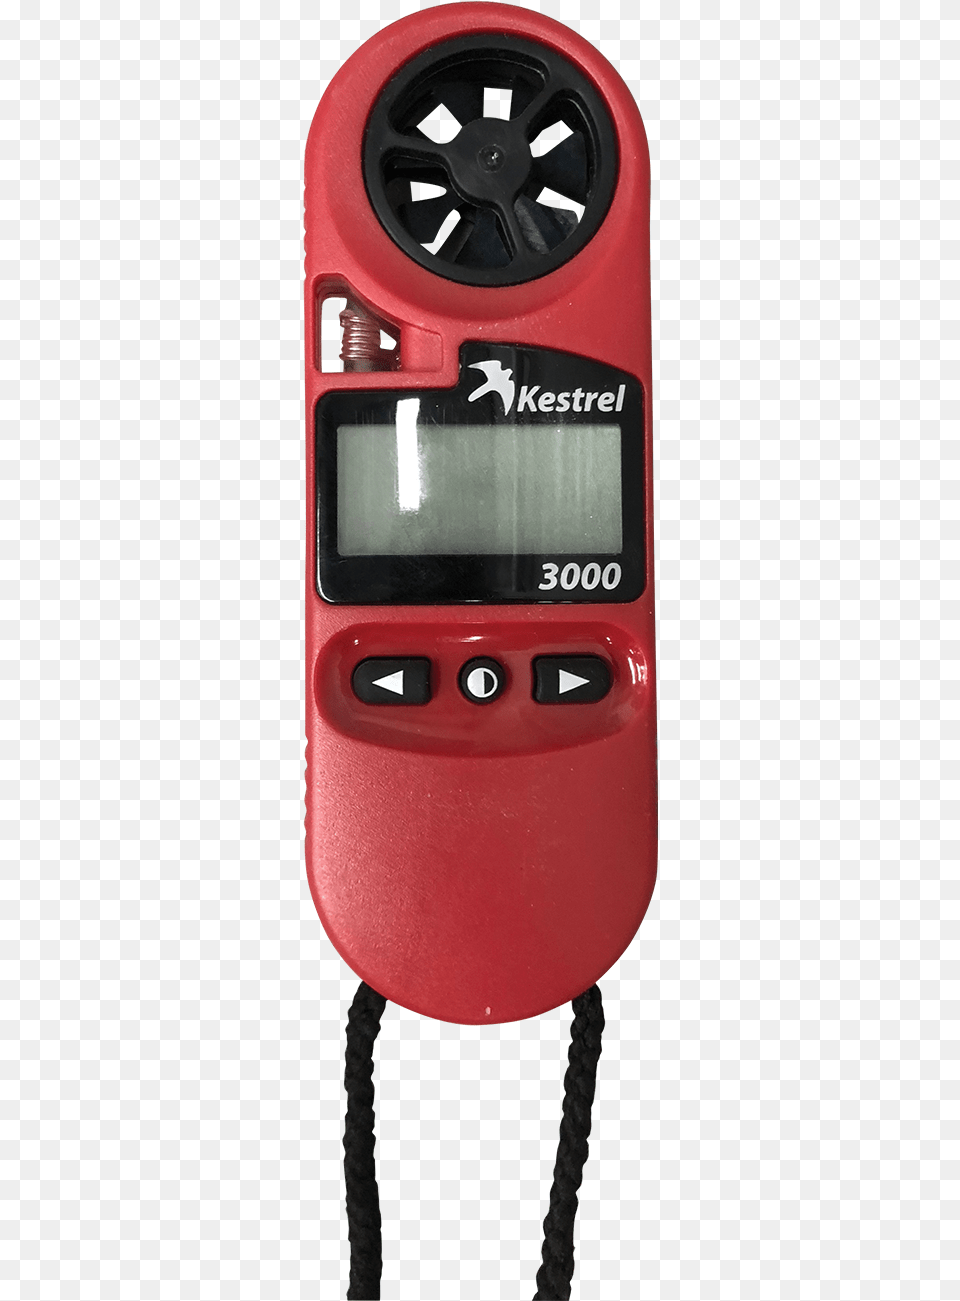 Kestrel Mk3000 Weather Meter Gauge, Computer Hardware, Electronics, Hardware, Monitor Free Png Download